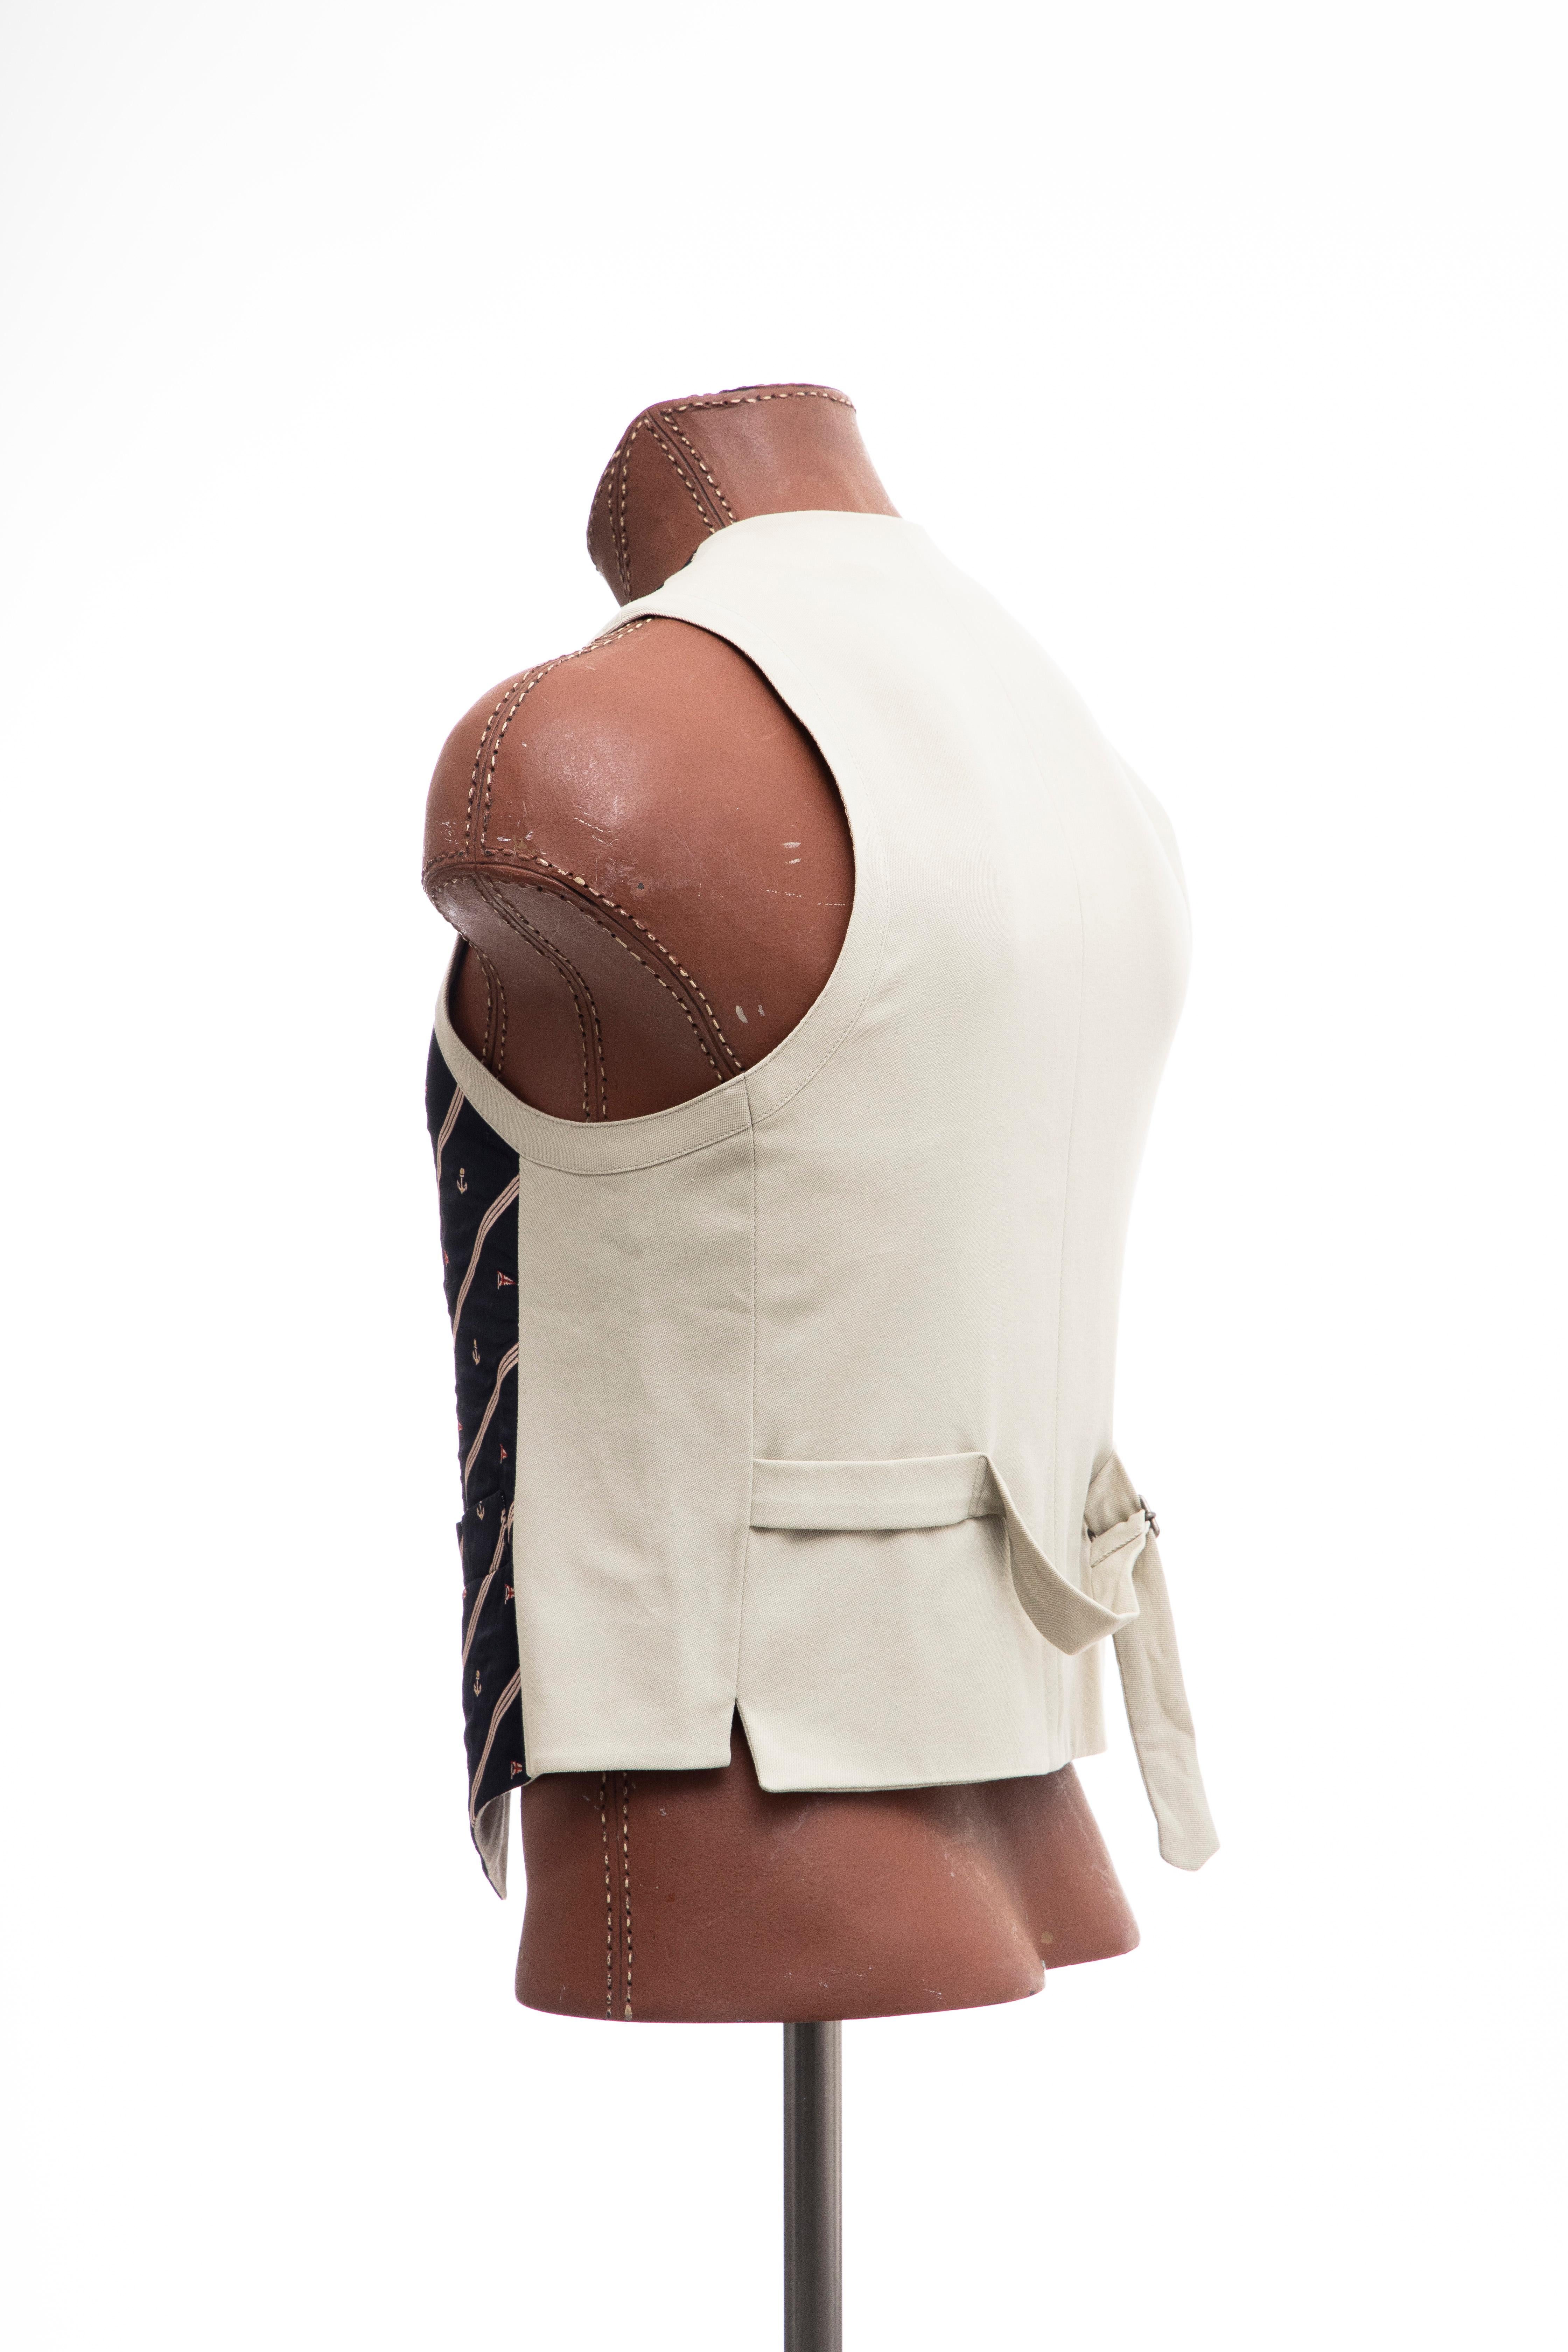 Dries Van Noten Men's Runway Nautical Suit Vest , Spring 1996 For Sale 1